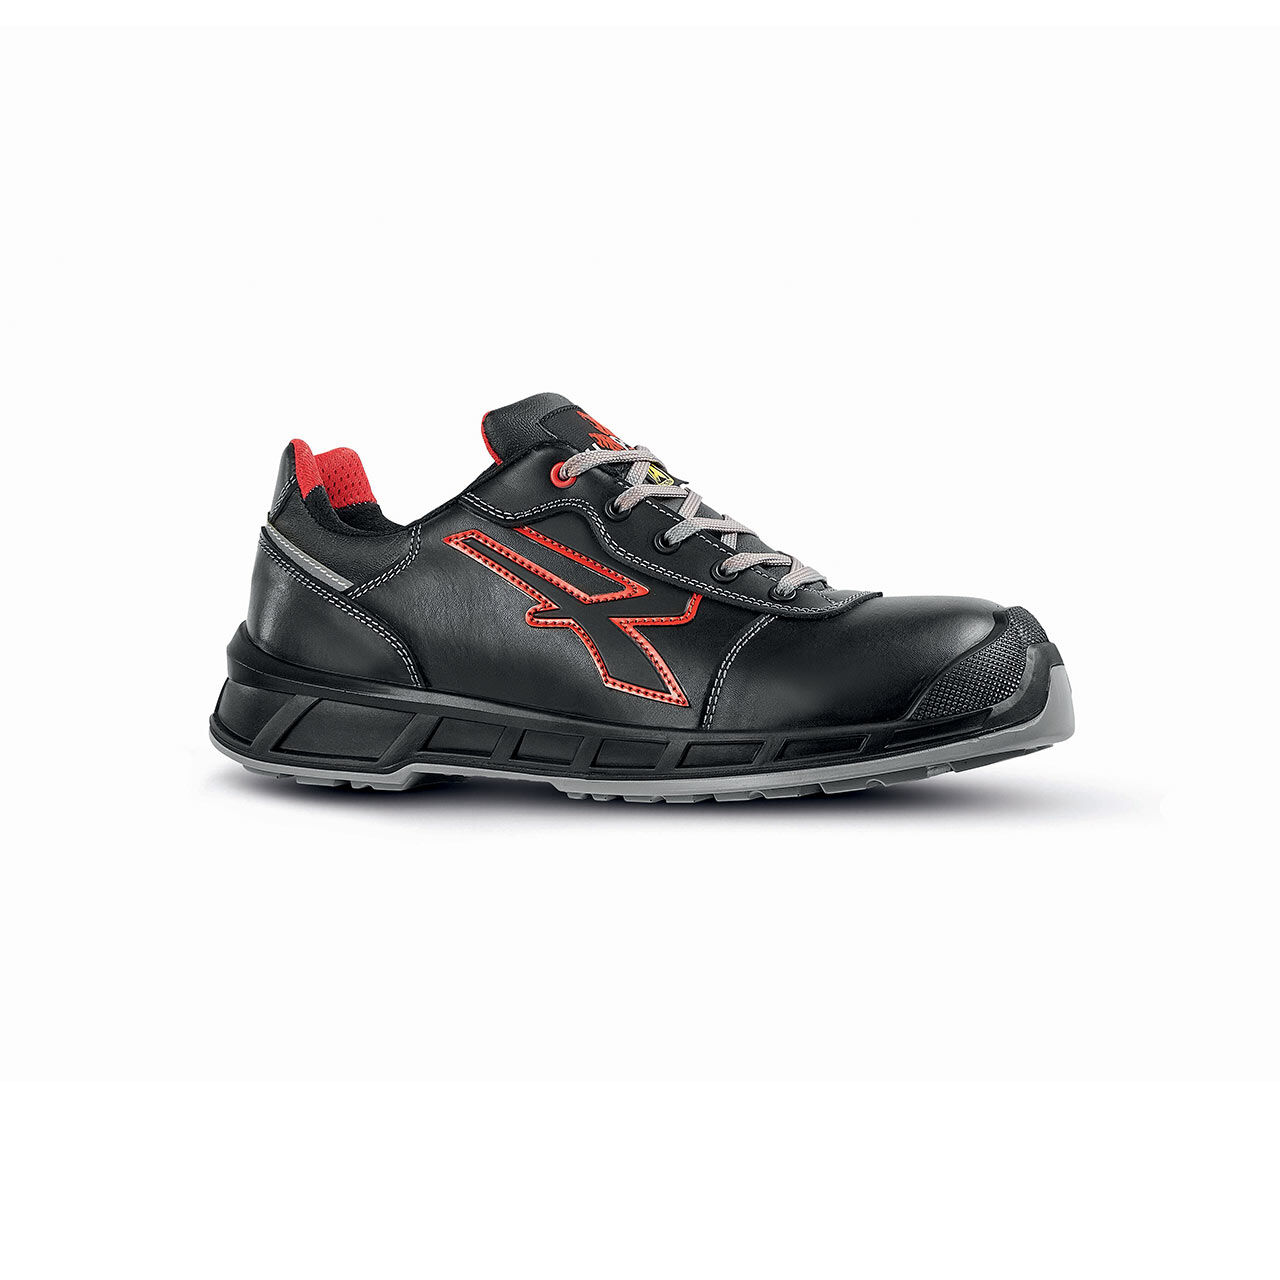 PUMA - Chaussures de sécurité mixte basse noir/rouge taille 46